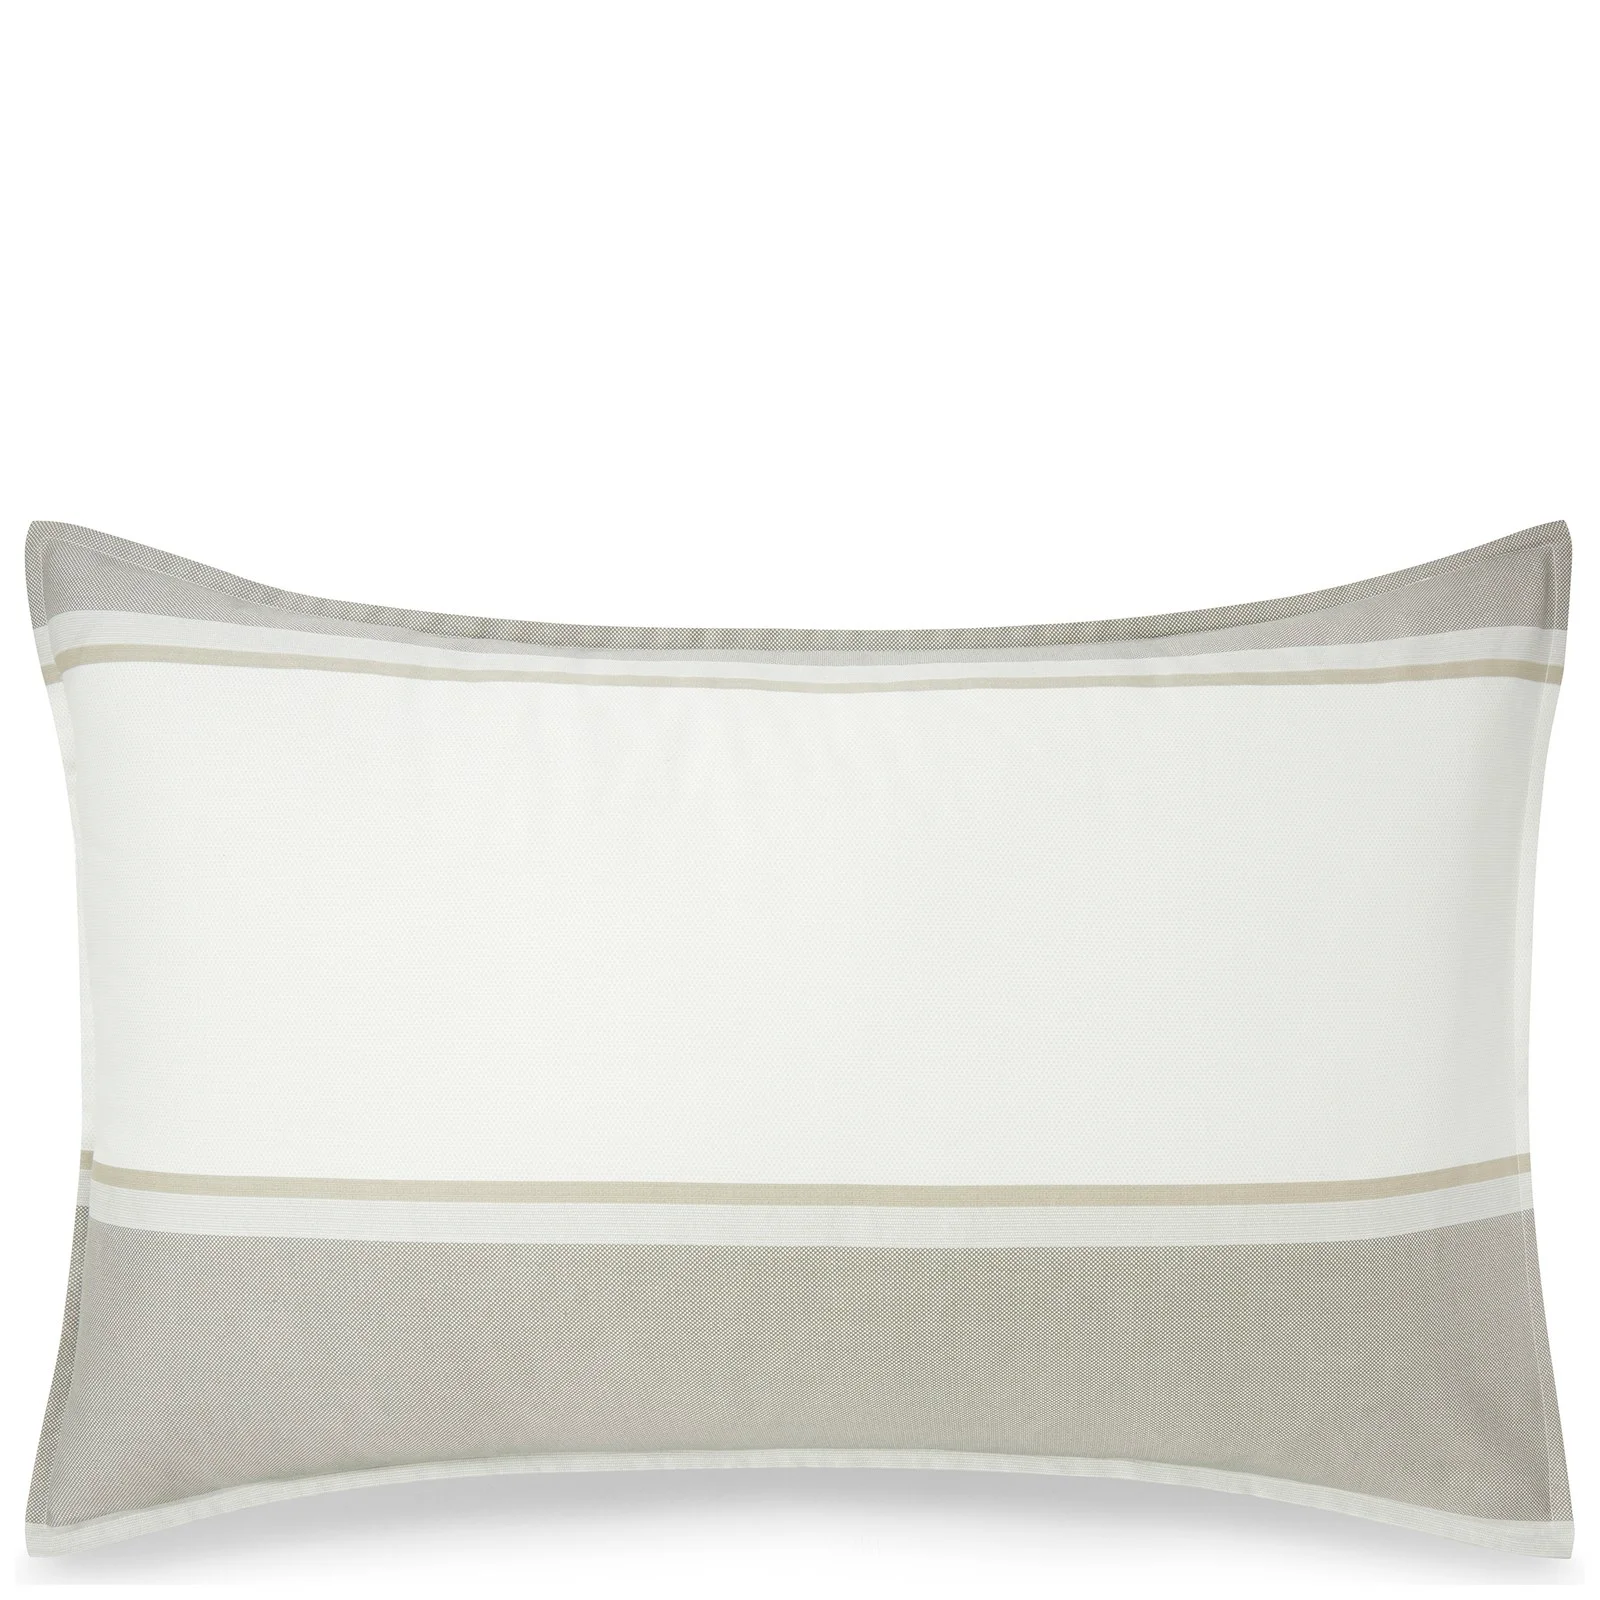 Calvin Klein Banded Net Cream Pillowcase Image 1